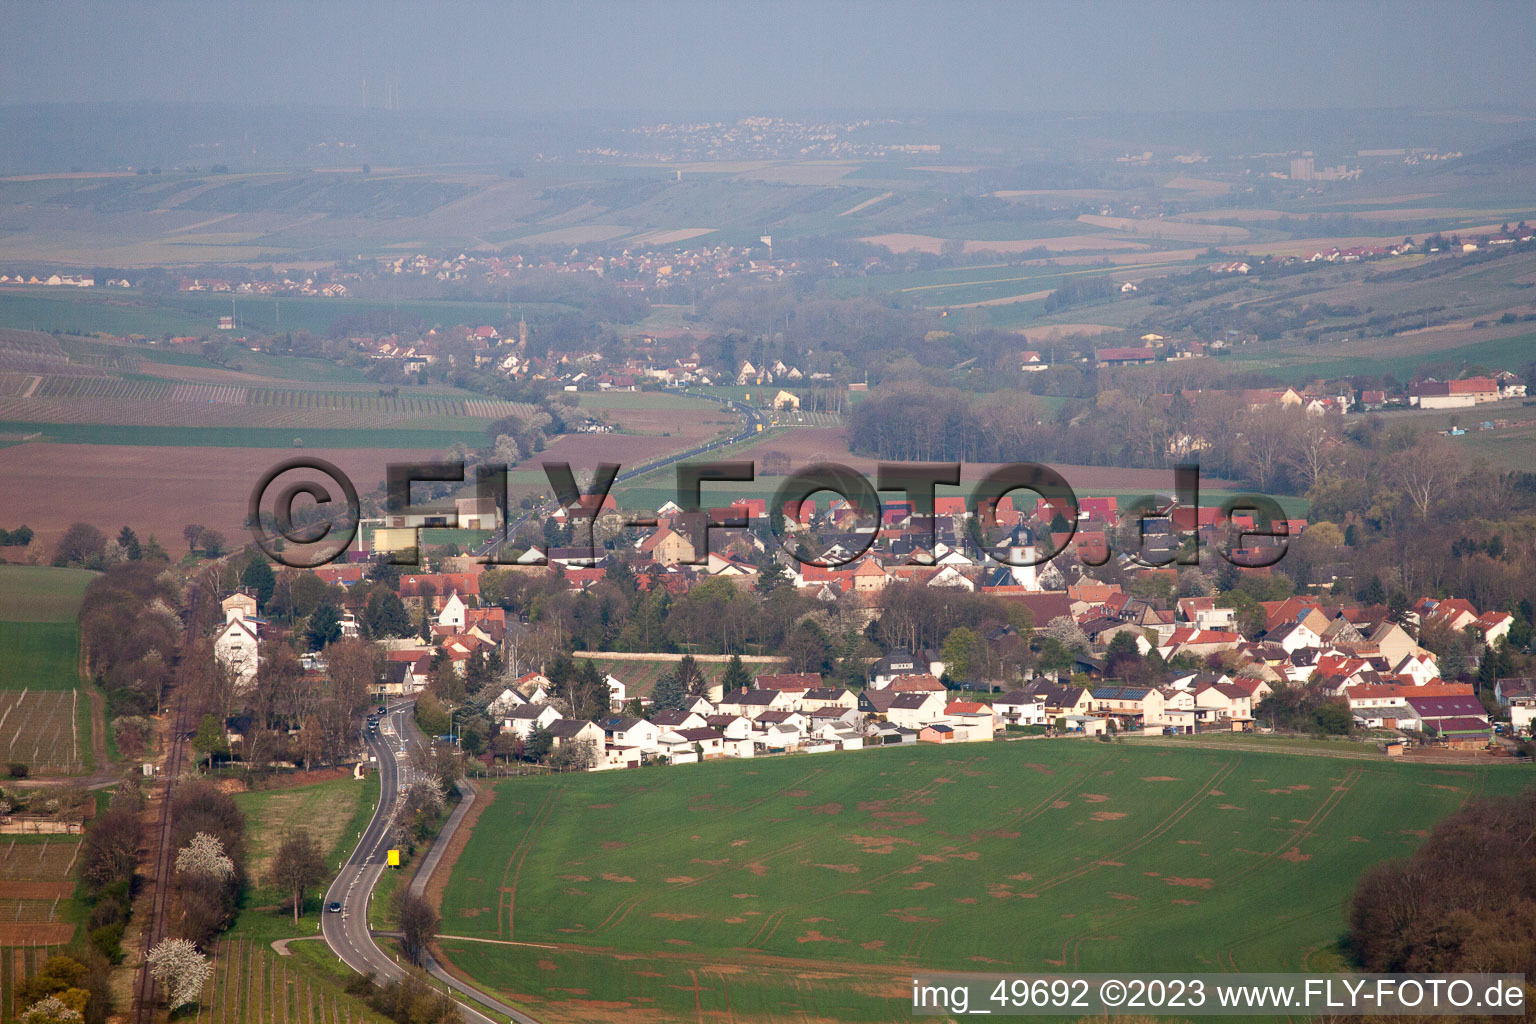 Luftbild von Wachenheim bei Alzey/Worms im Bundesland Rheinland-Pfalz, Deutschland